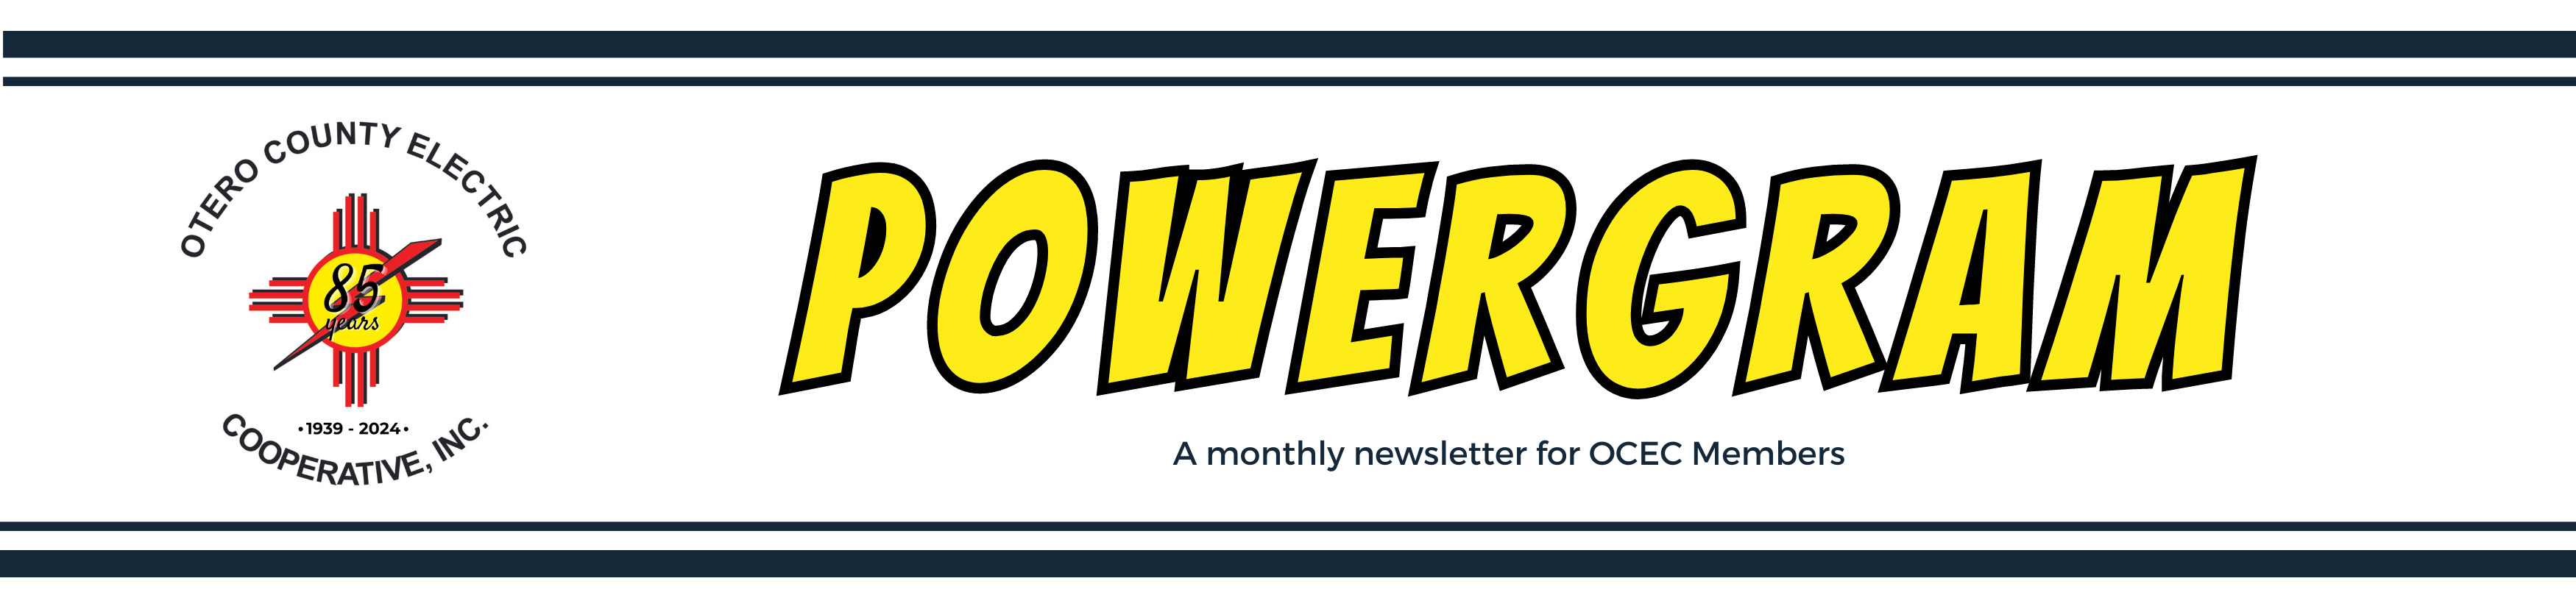 PowerGram Newsletter